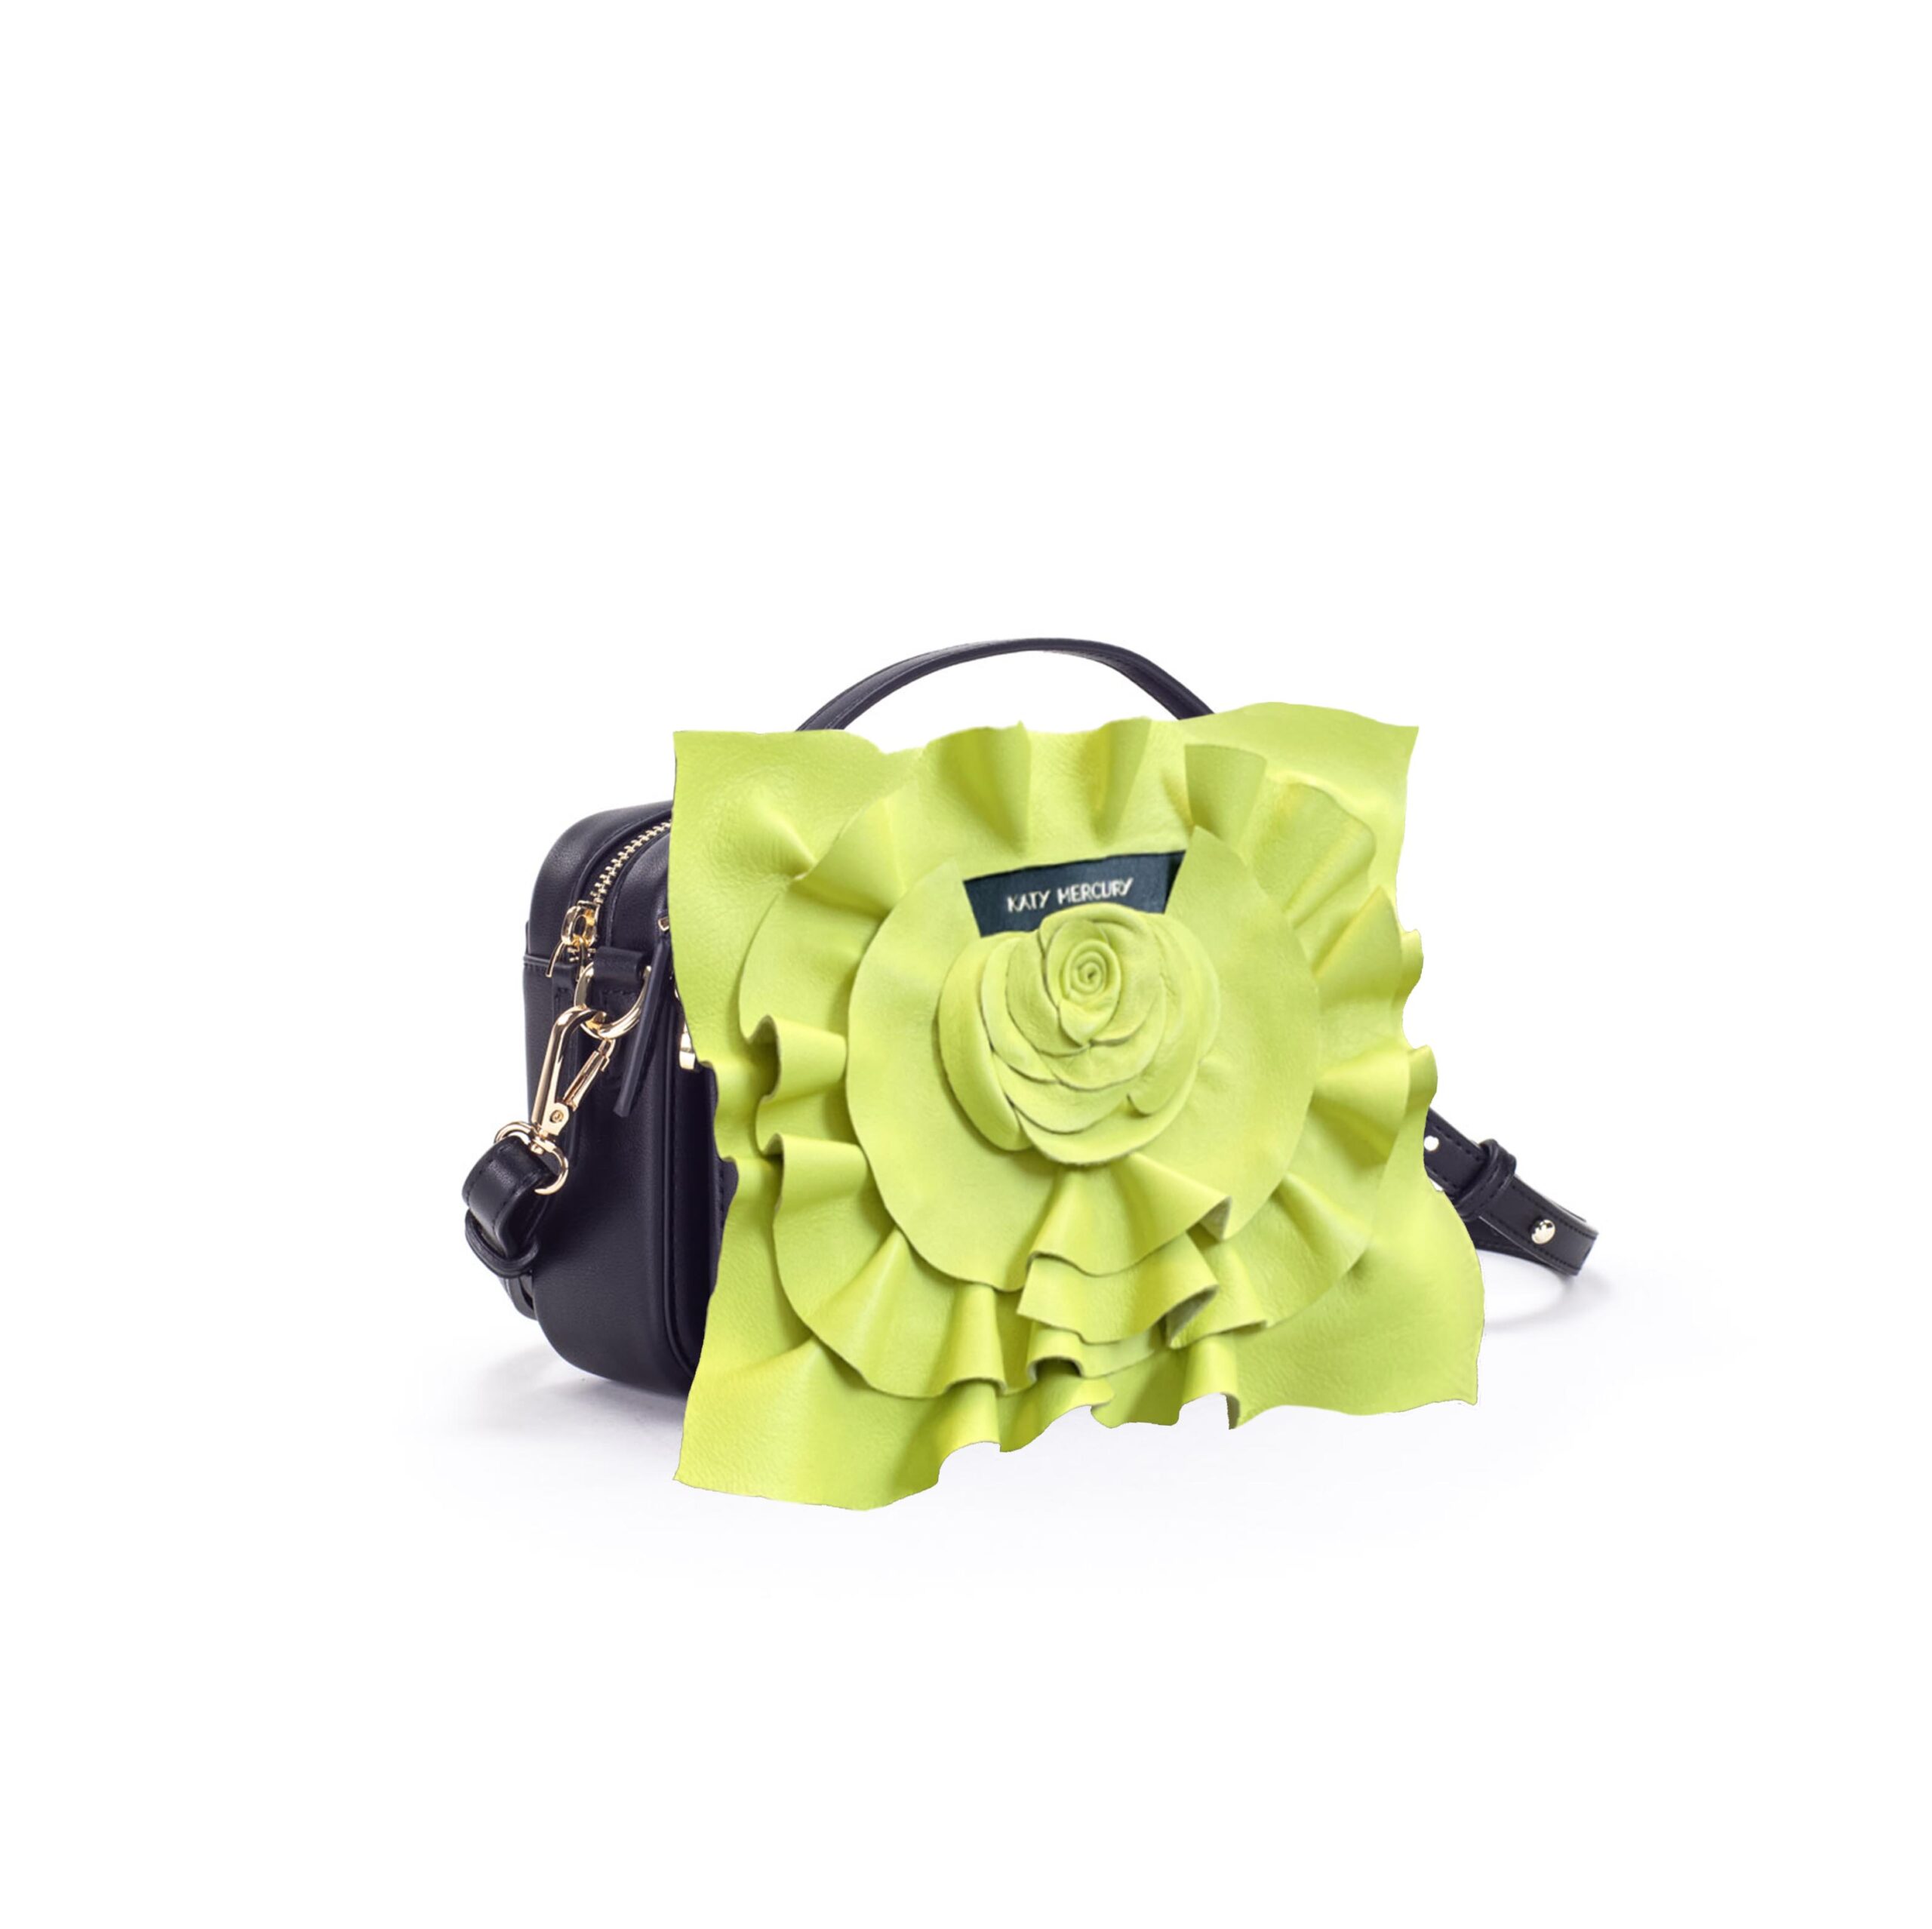 Neon-gelbe Lederrose handmade in Germany StyleCOVER Wechselklappe auf KATY MERCURY Bag#1 im Set mit POUCH zusätzlicher kleiner Tasche